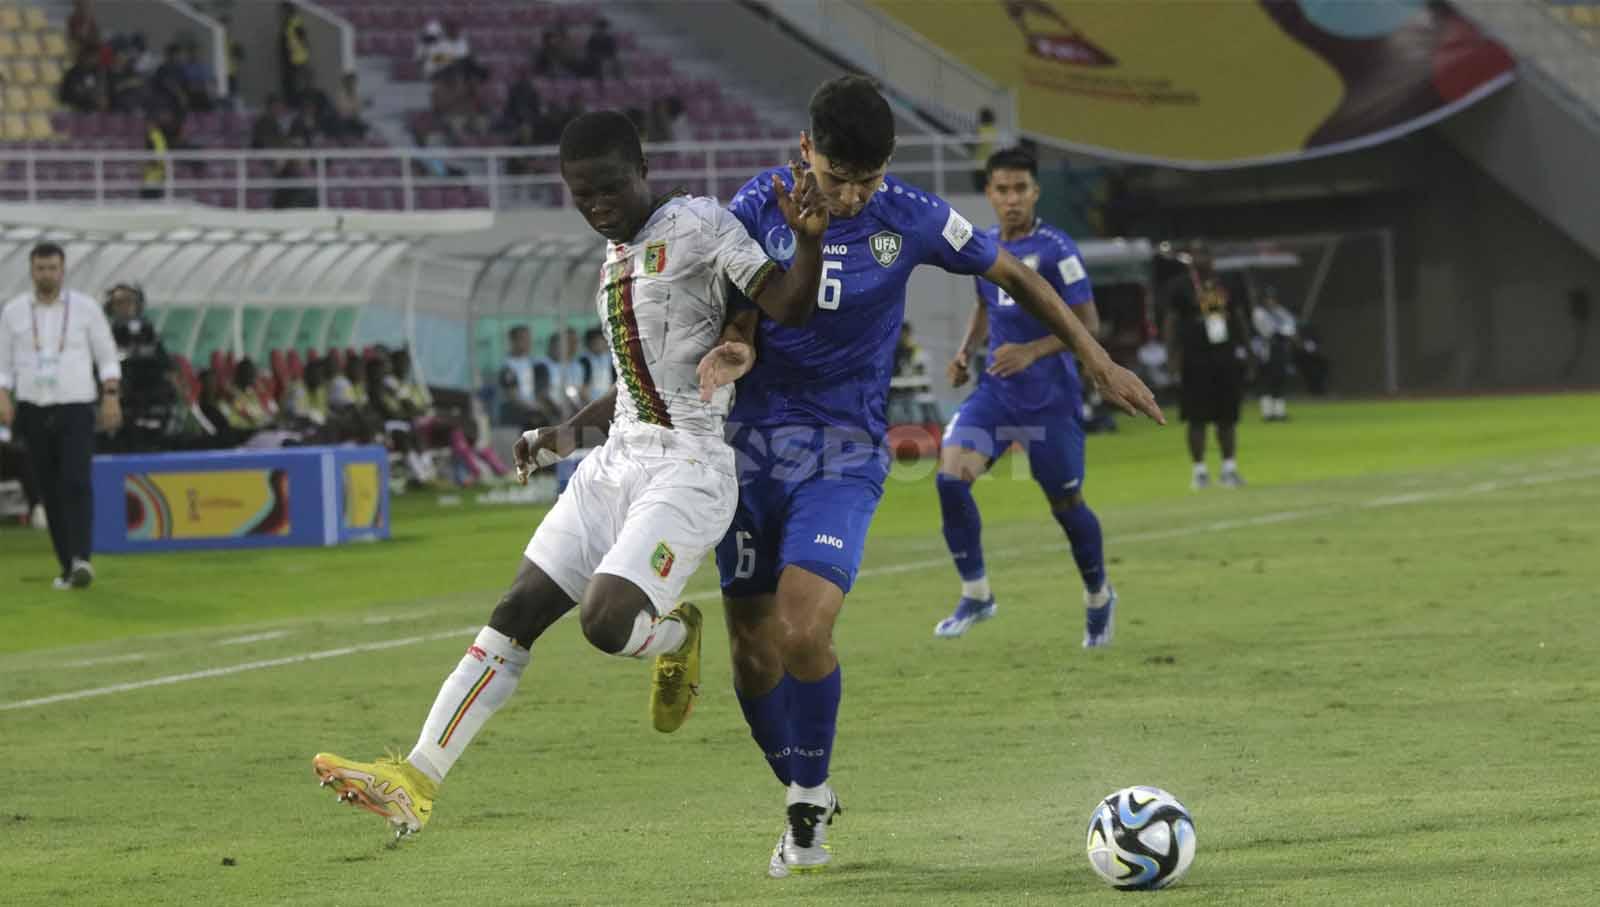 Bek Uzbekistan U-17, Ozodbek Uktamov, saat mengawal pergerakan winger Mali U-17 dalam pertandingan Piala Dunia U-17 2023 grup B di Stadion Manahan Solo, Jumat (10/11/23. Nofik Lukman Hakim/INDOSPORT